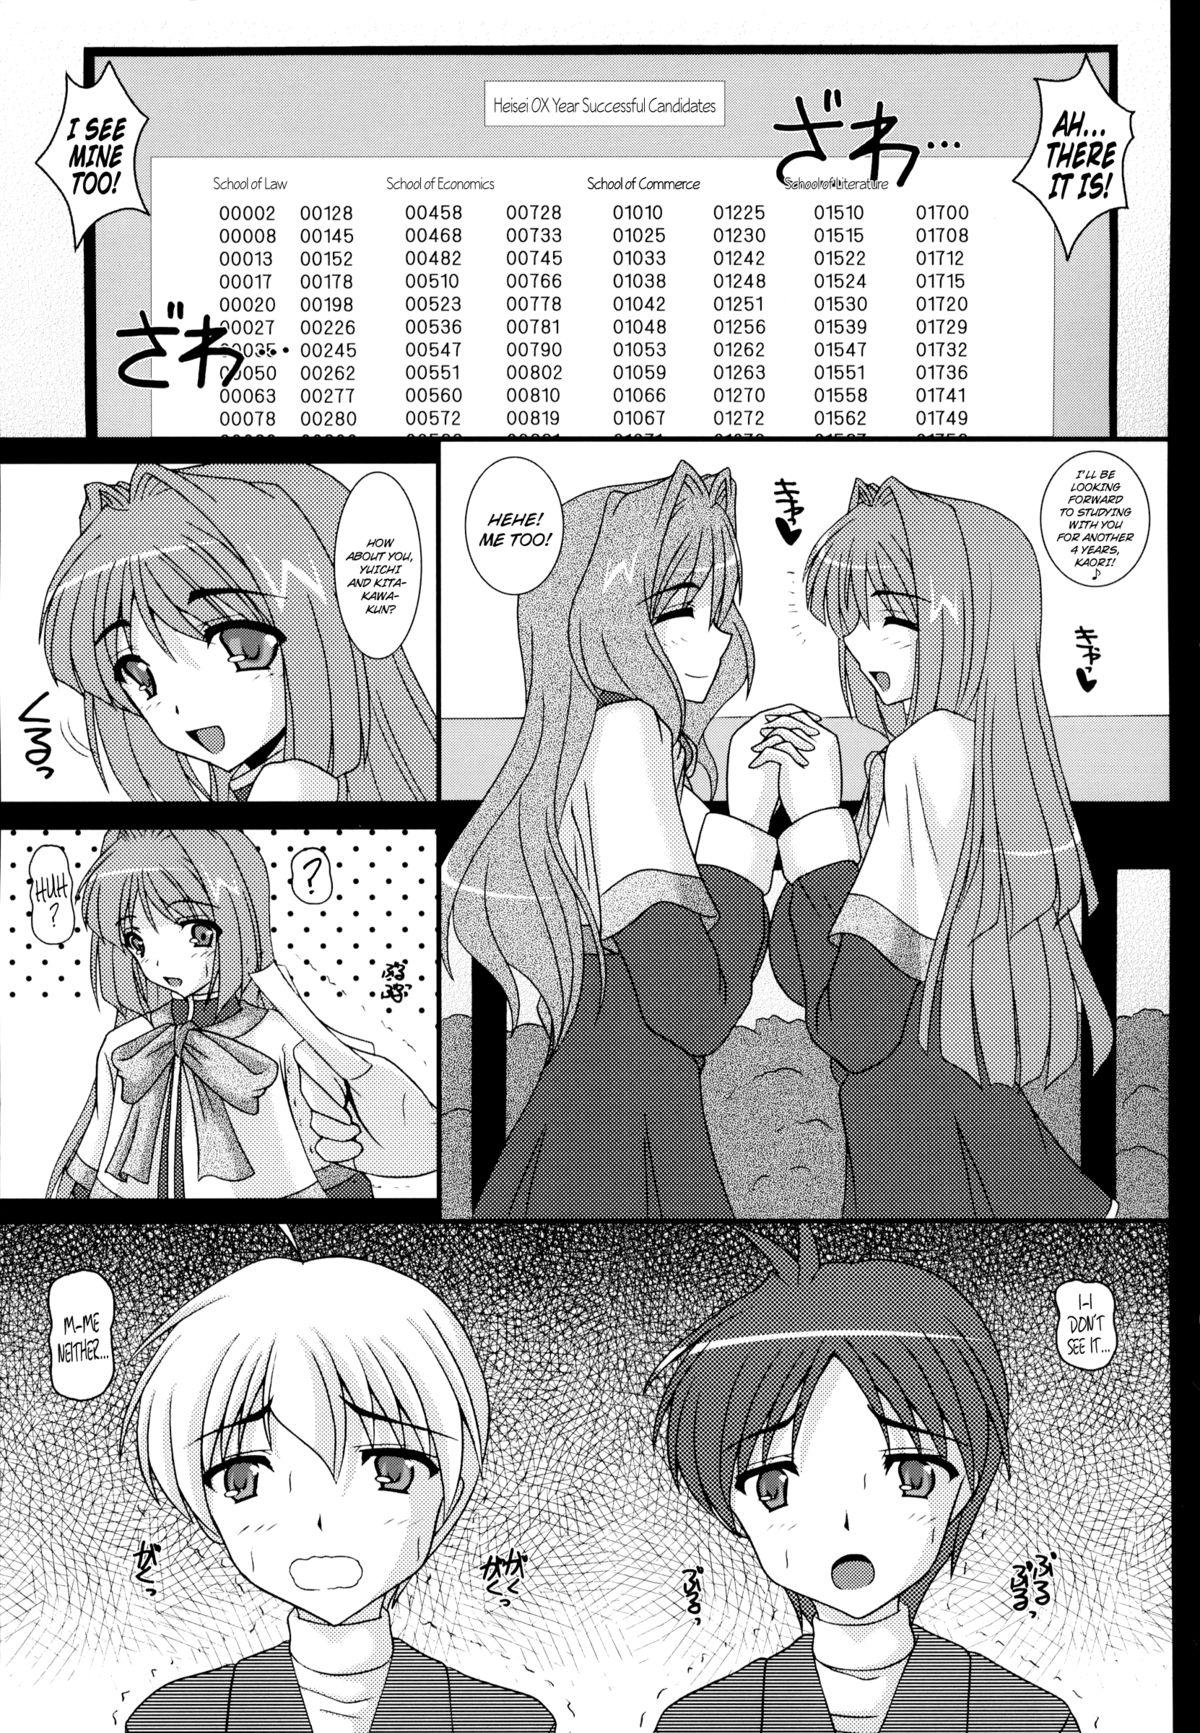 Married Aikagi - Ubawareta Osananajimi - Kanon Spread - Page 2